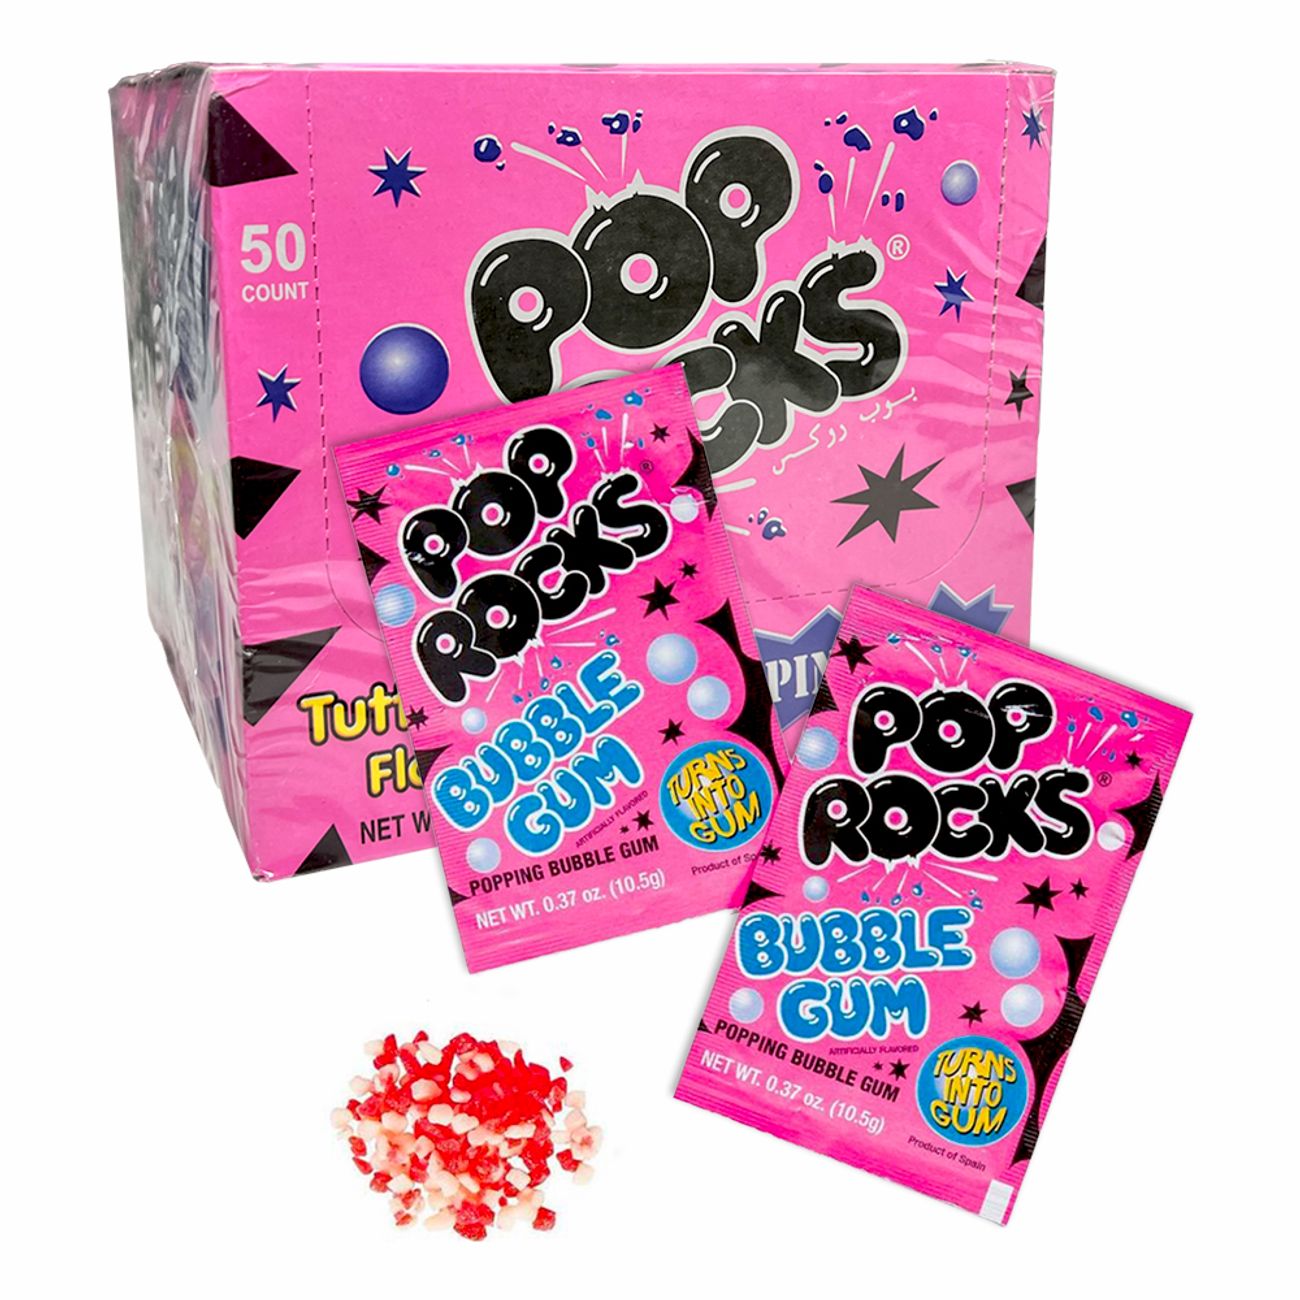 pop-rocks-bubble-gum-74250-2